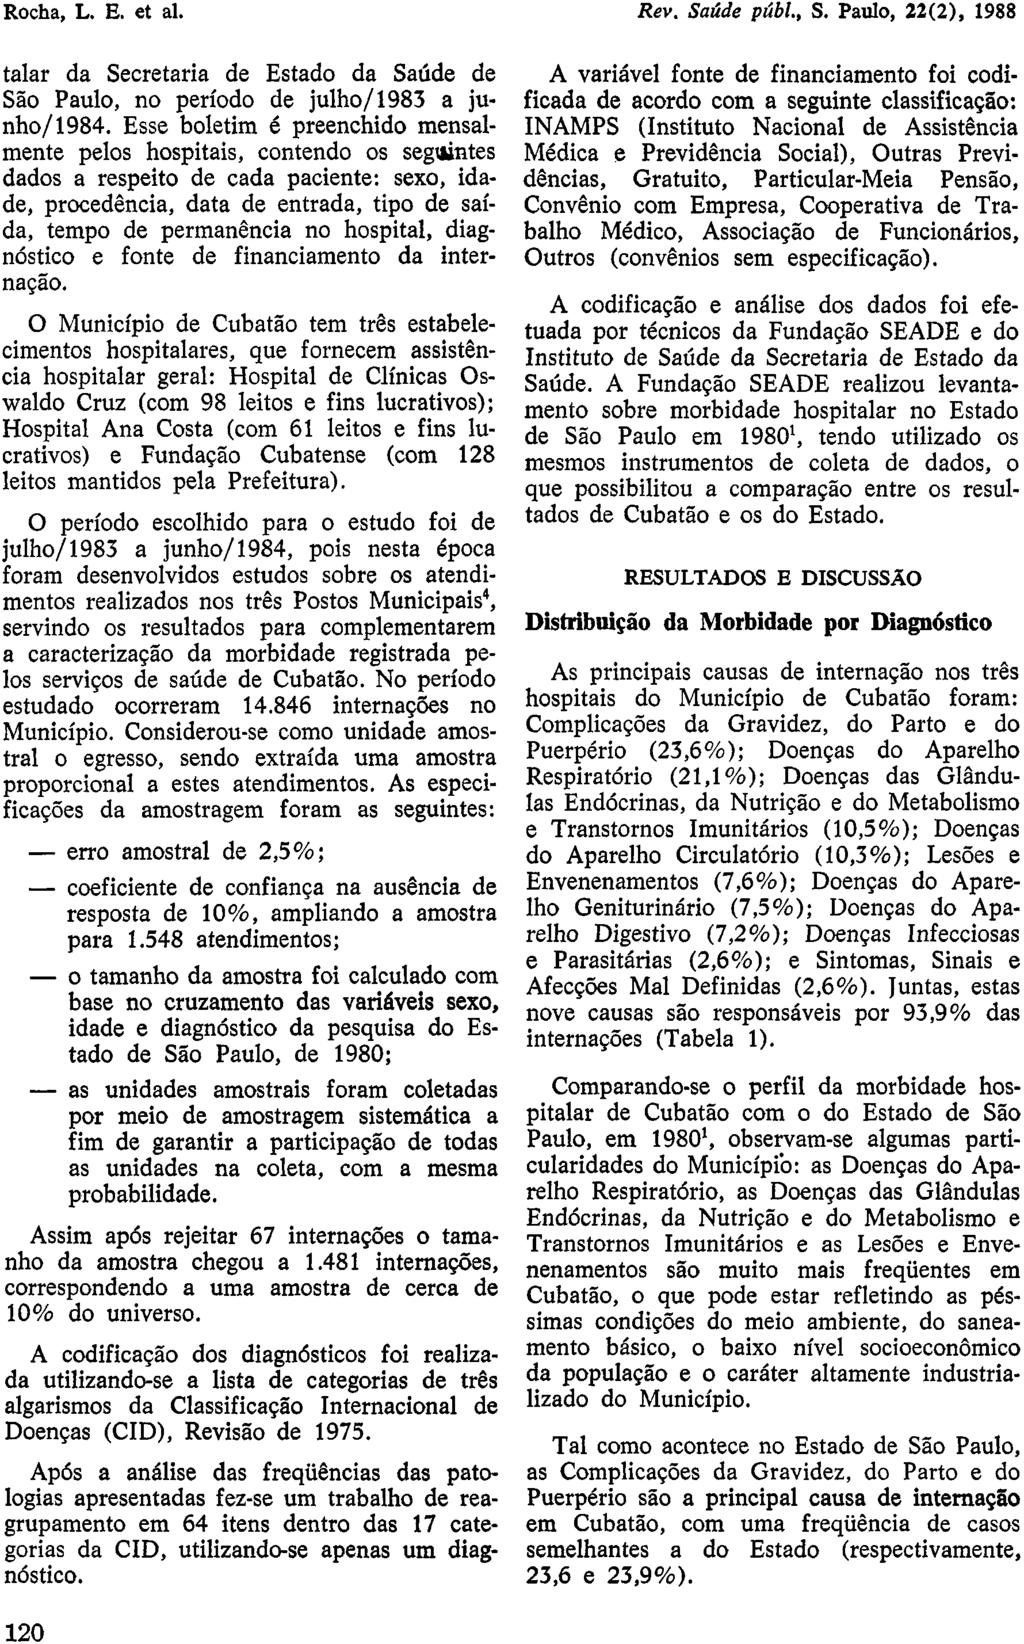 talar da Secretaria de Estado da Saúde de São Paulo, no período de julho/1983 a junho/1984.